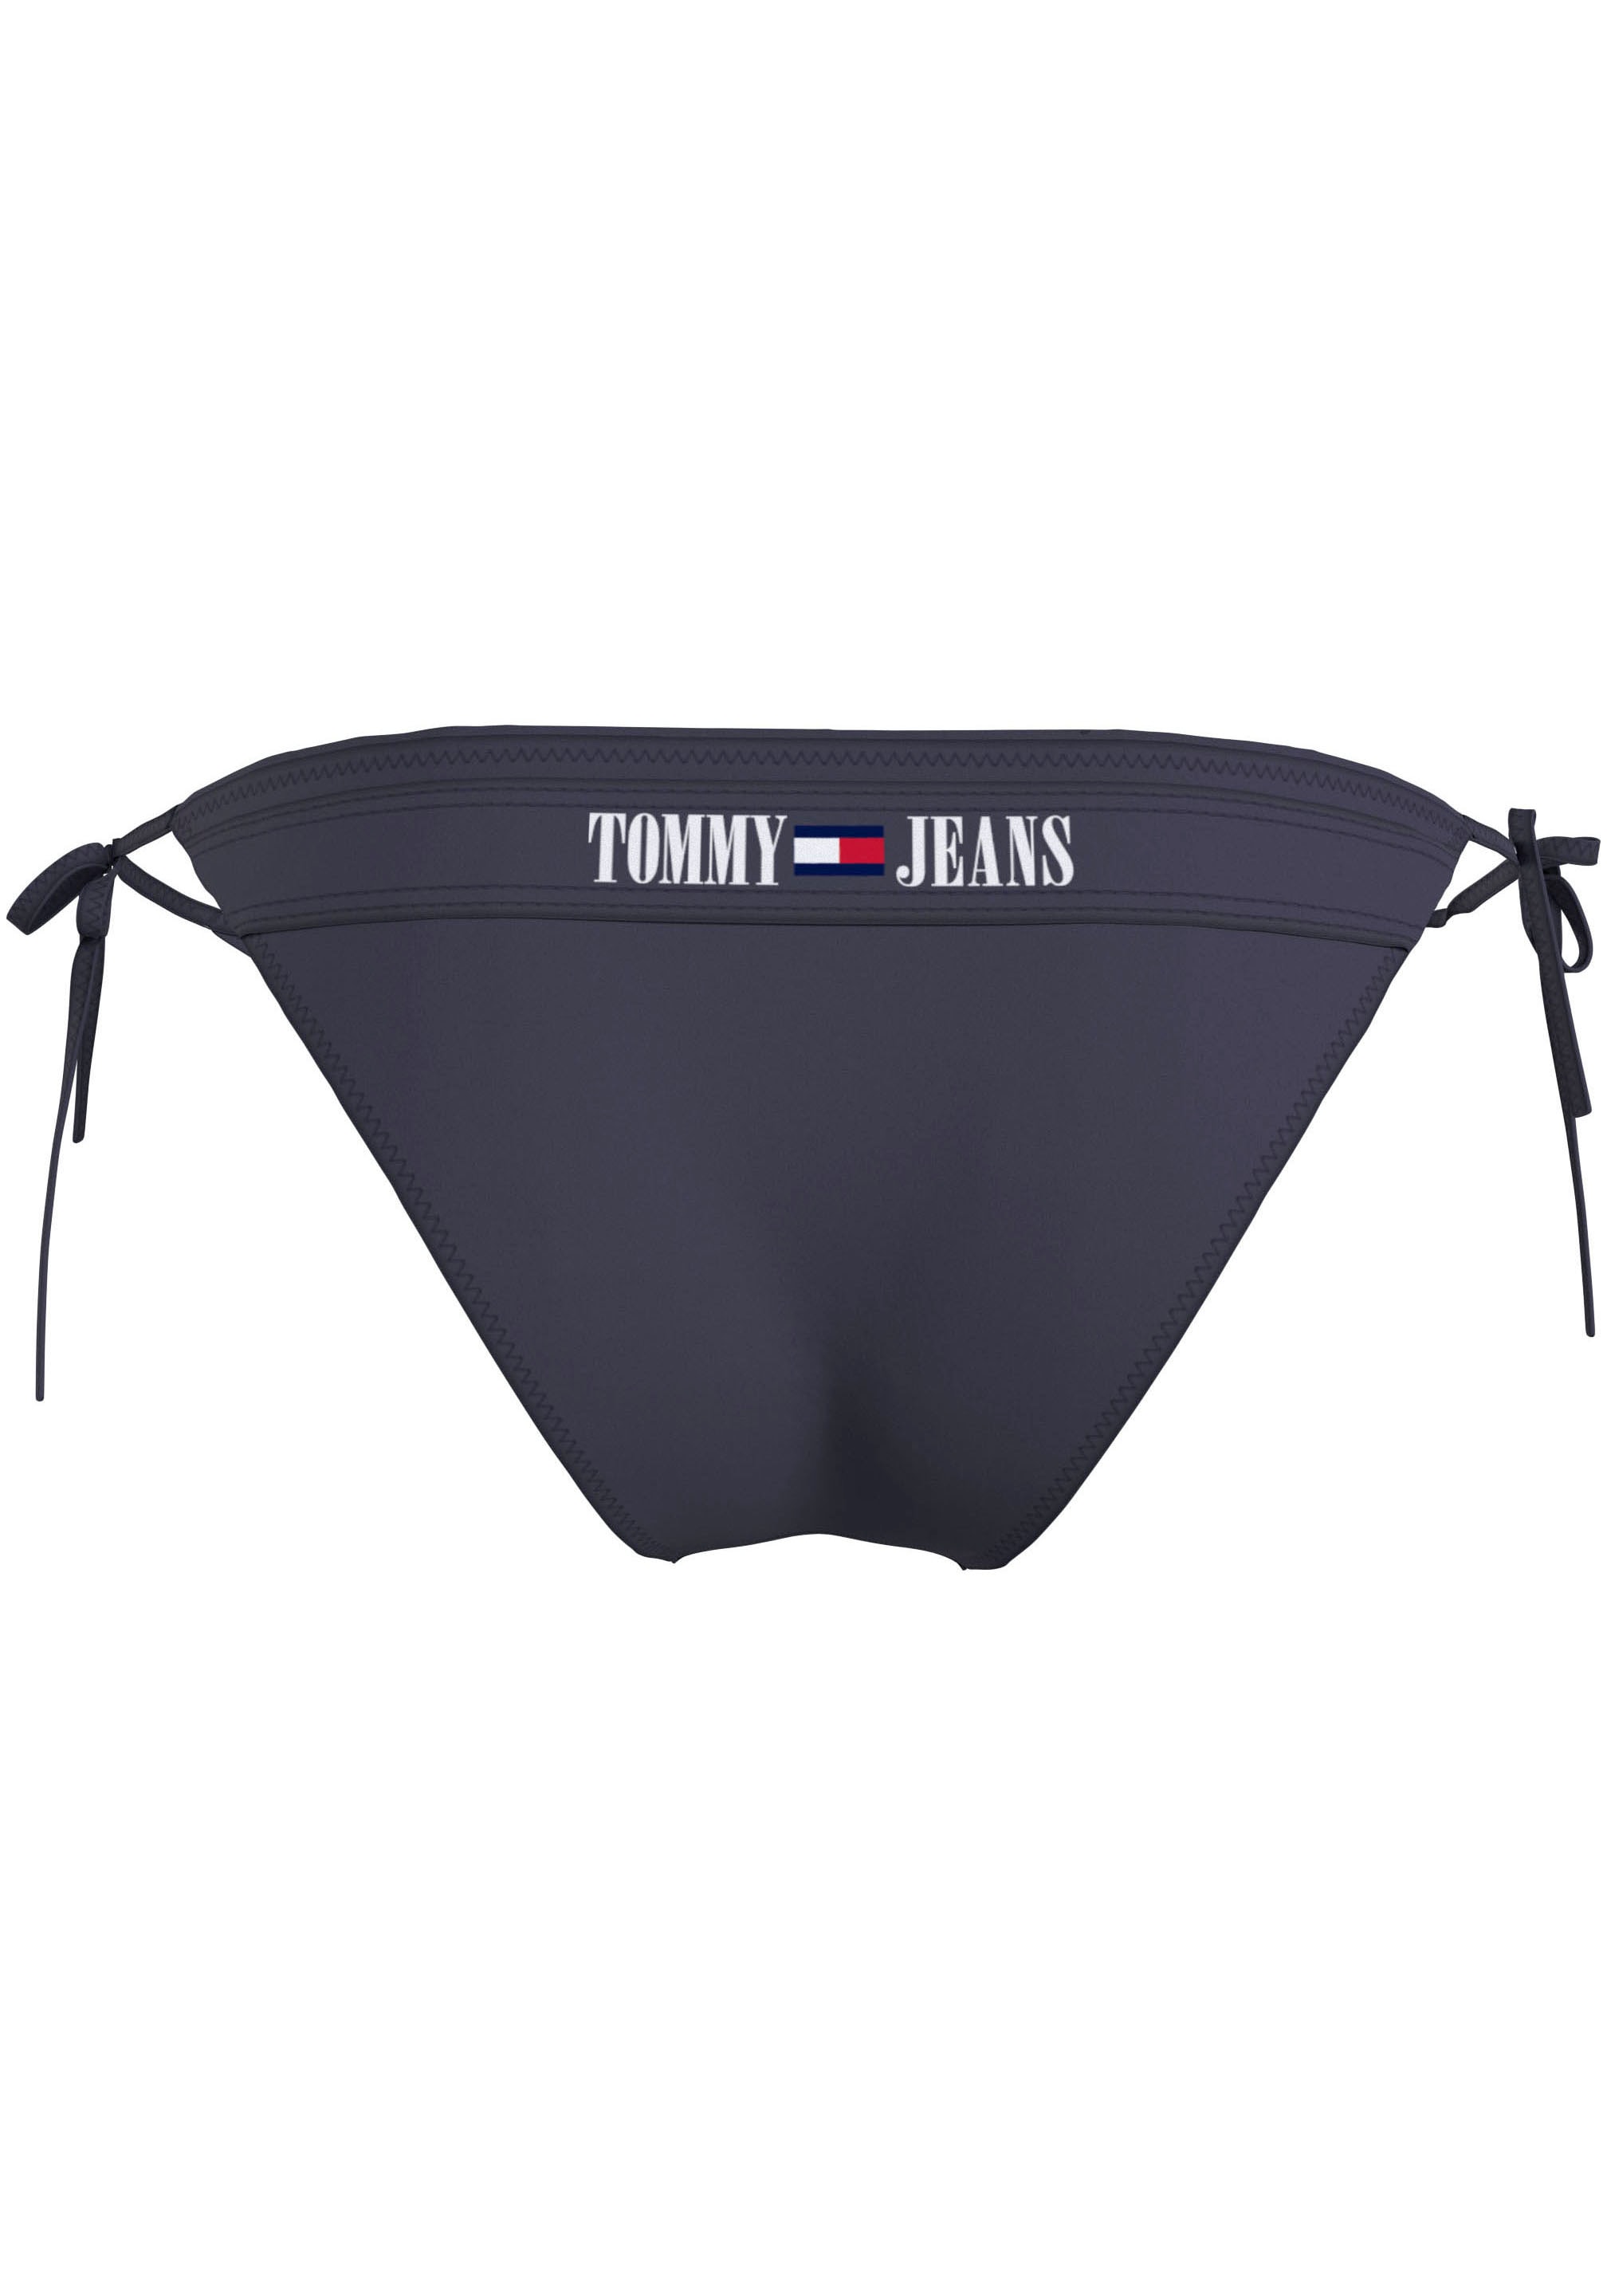 Tommy Hilfiger Swimwear Badehose »STRING SIDE TIE«, für Schwimmen